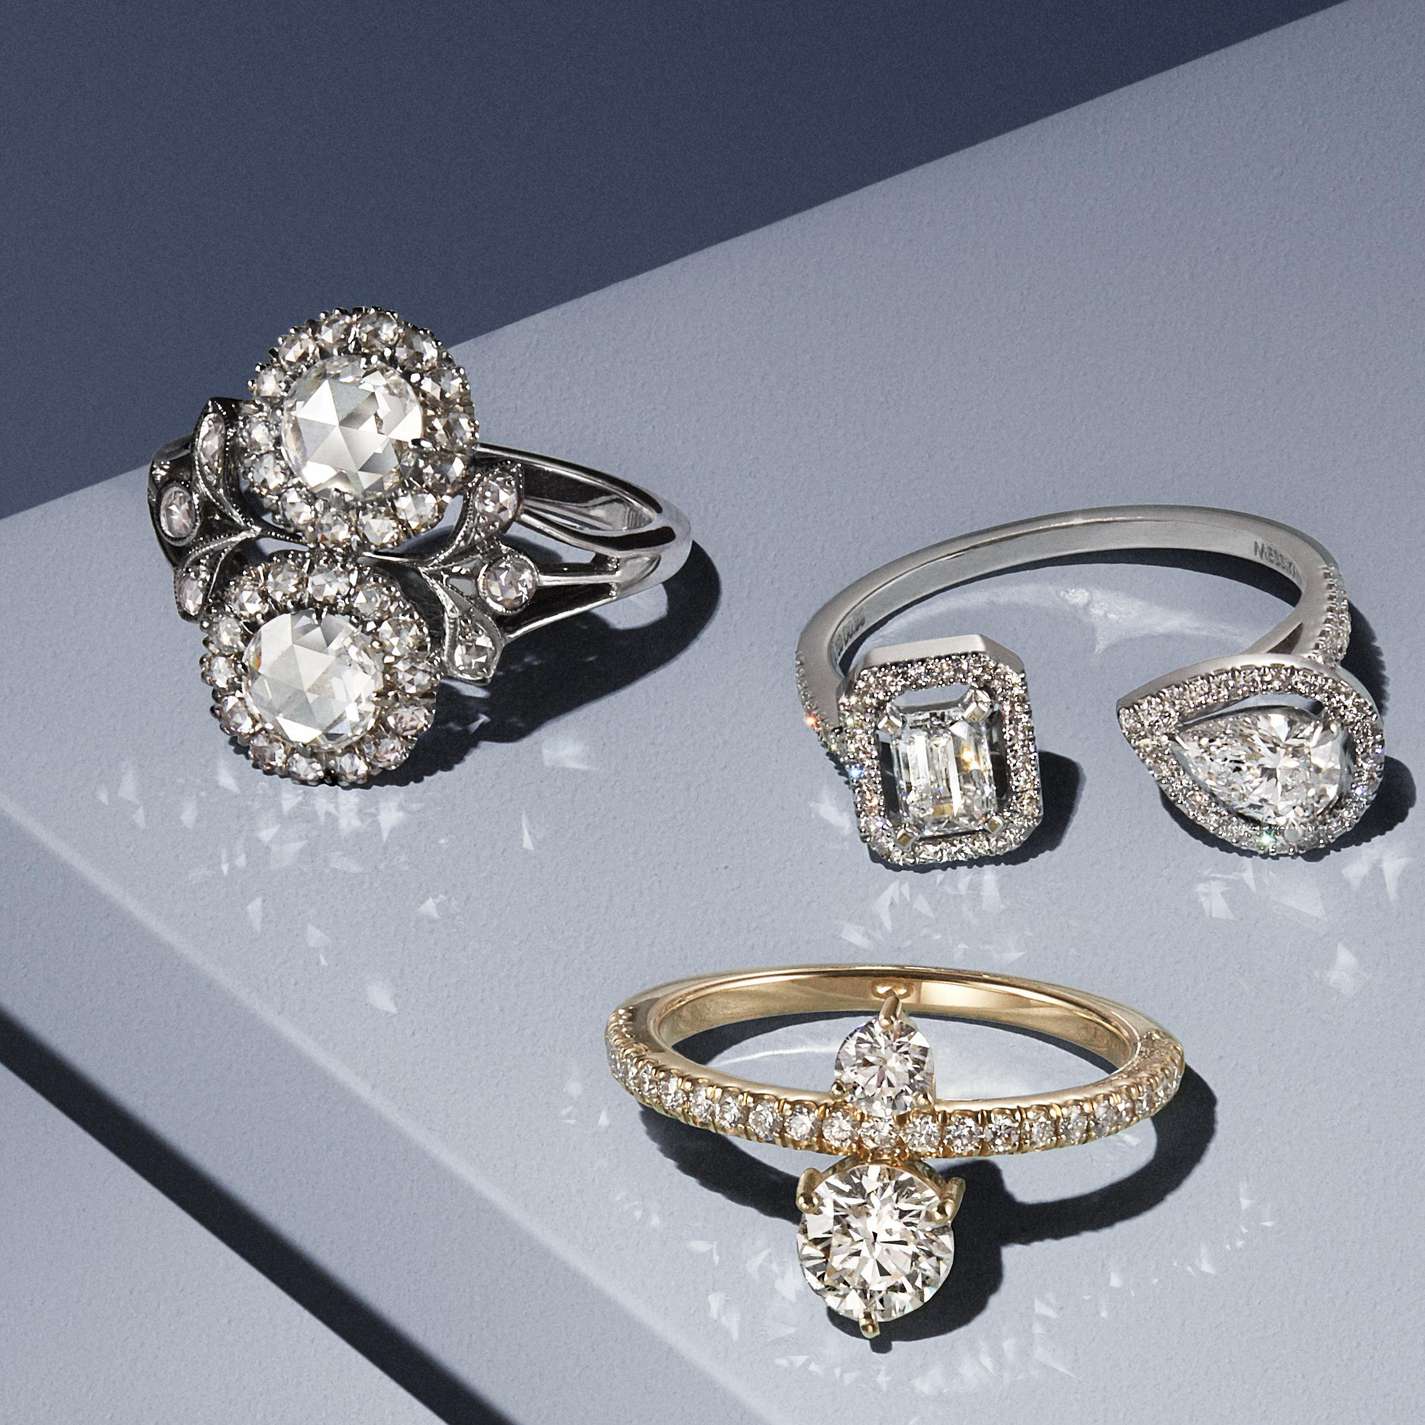 デザイナーが選ぶ美しい2つのダイヤモンドのオーダー婚約指輪20選 ...